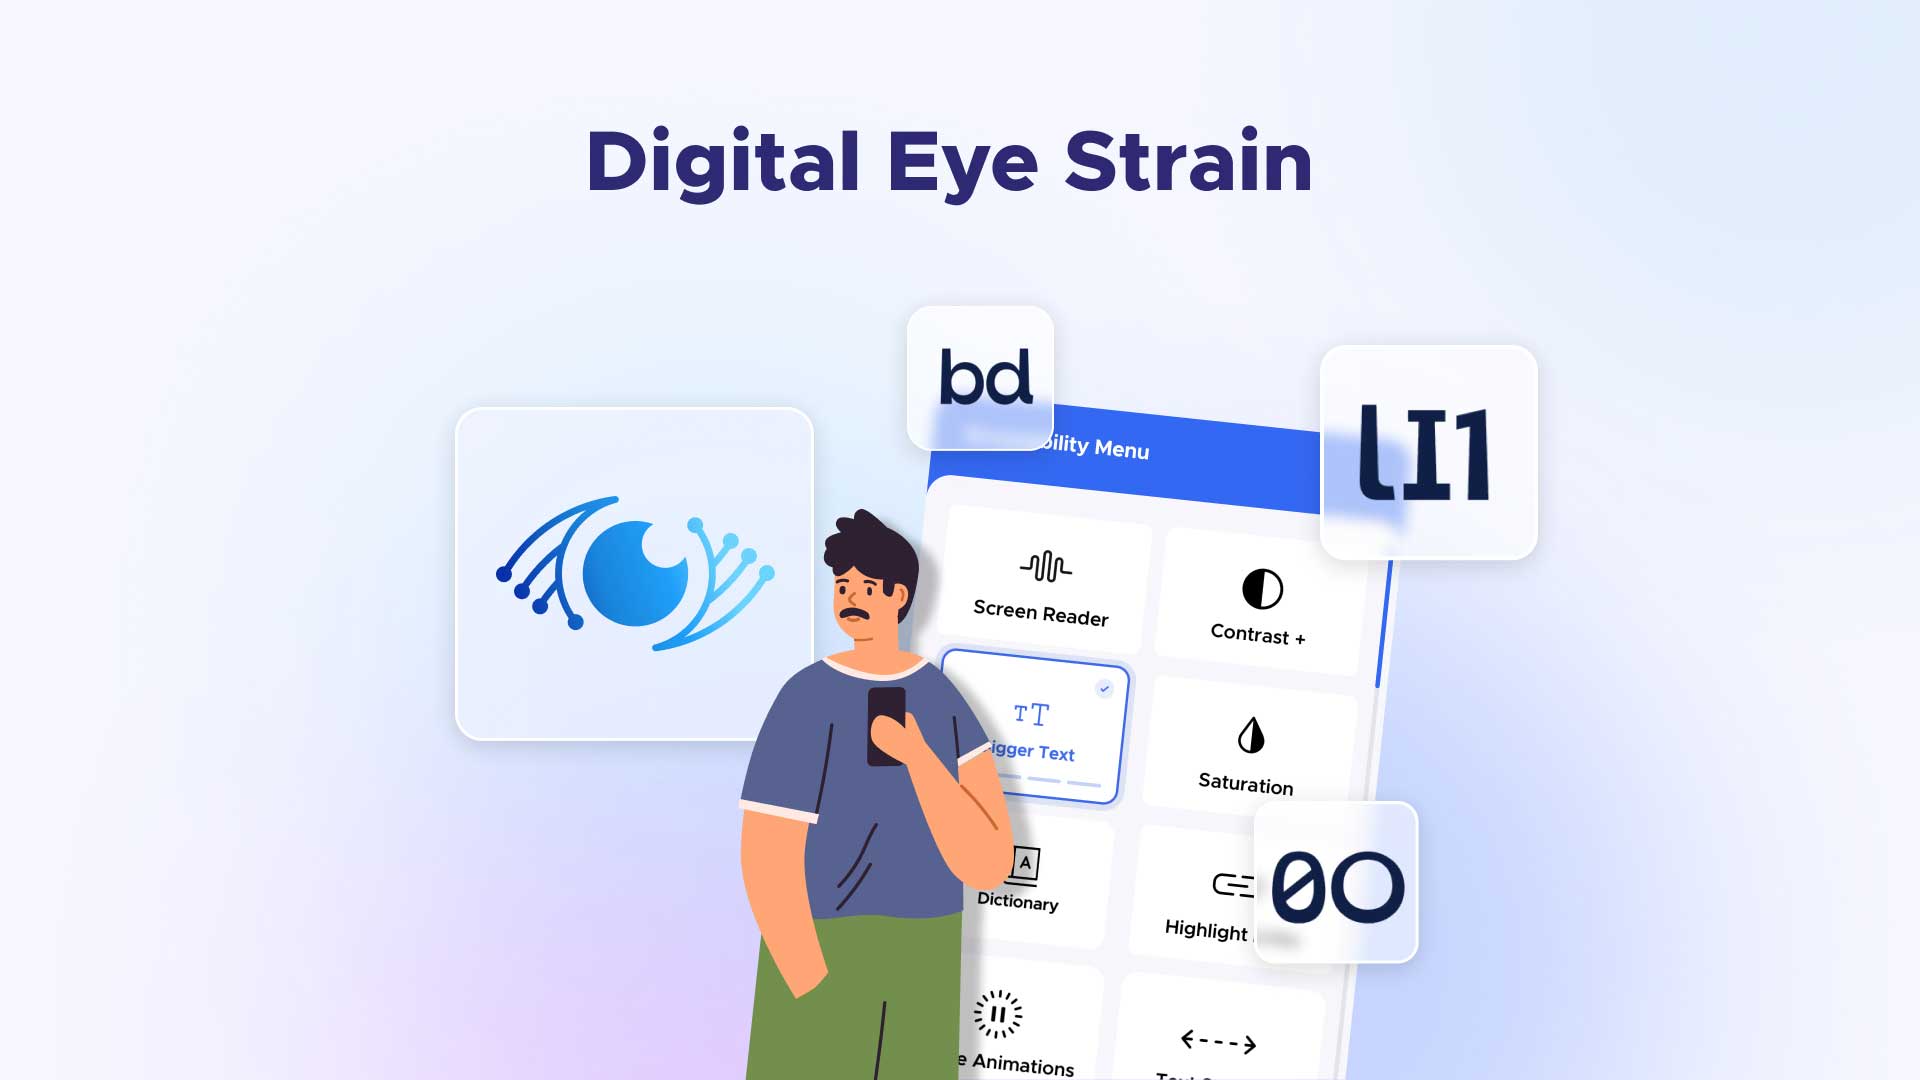 Digital Eye Strain: A barrier to digital accessibility